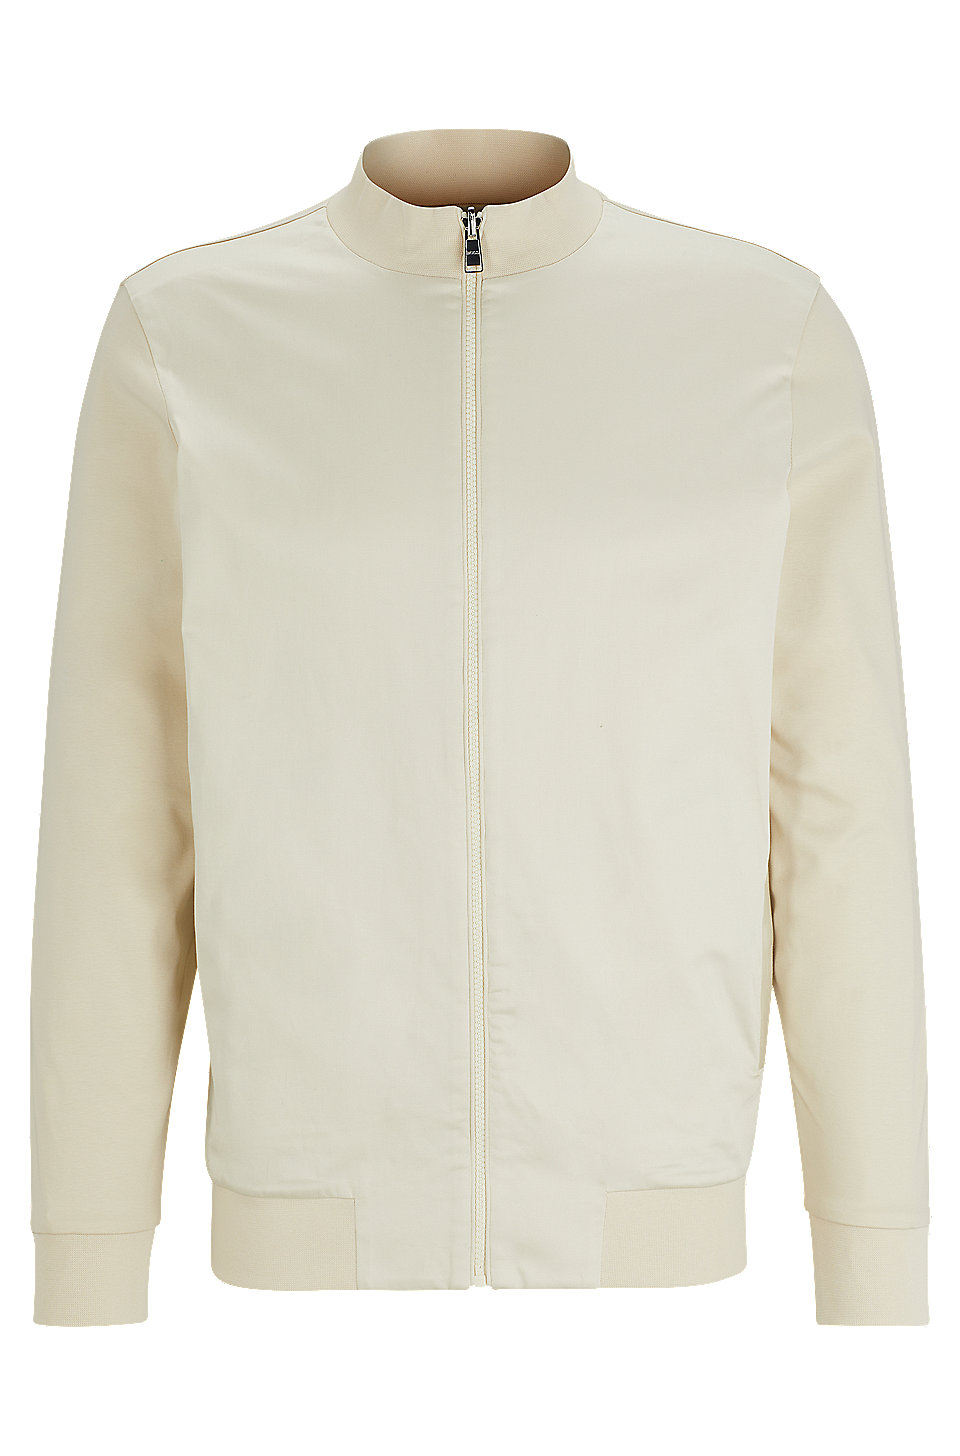 BOSS - Zip-up sweatshirt in mercerized cotton with insert details